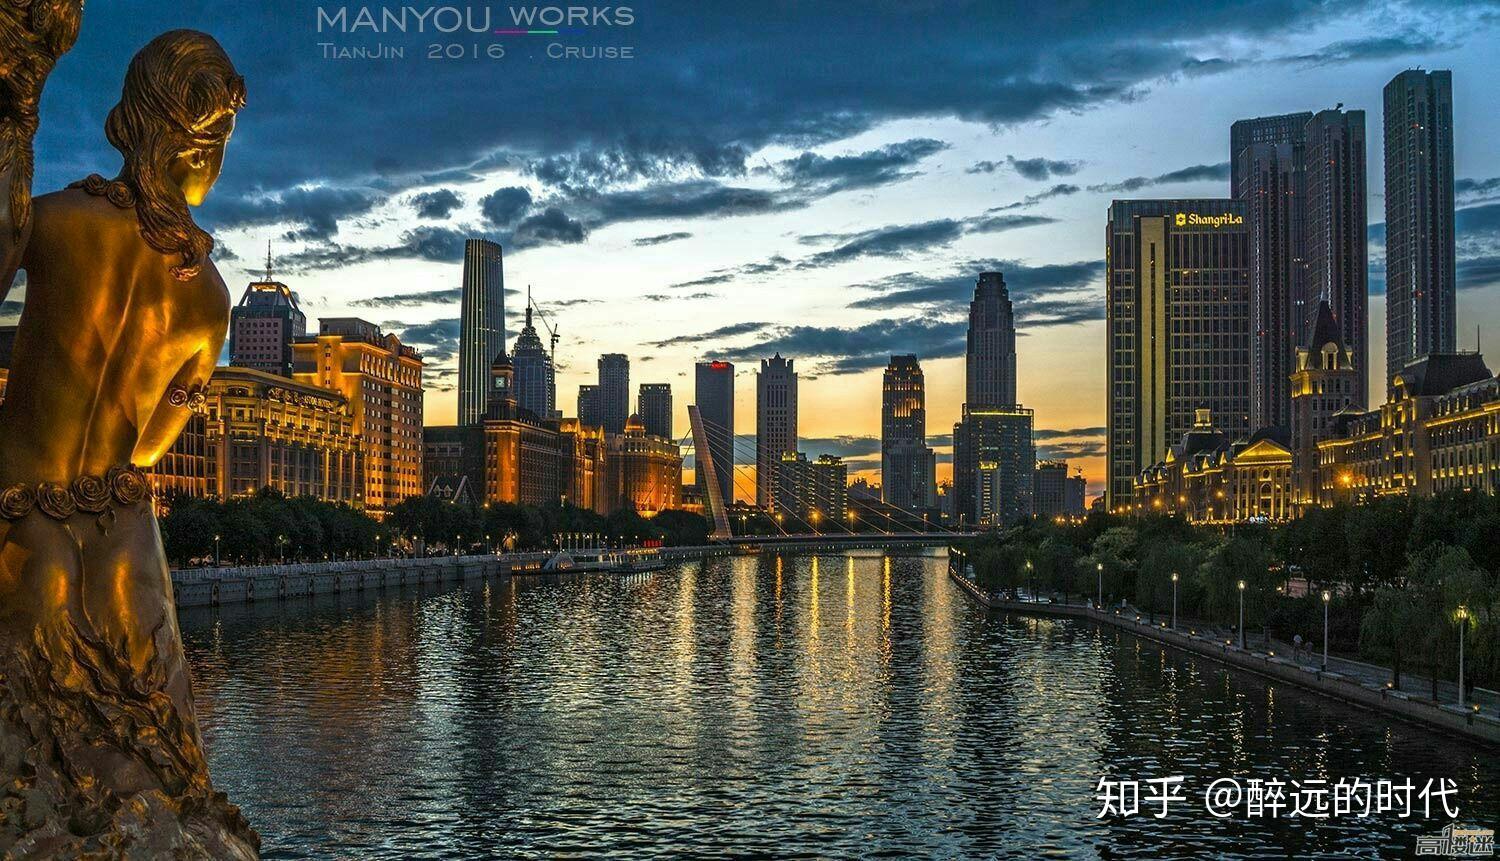 天津滨海新区海河大桥夜景图片壁纸_桌面壁纸_mm4000图片大全